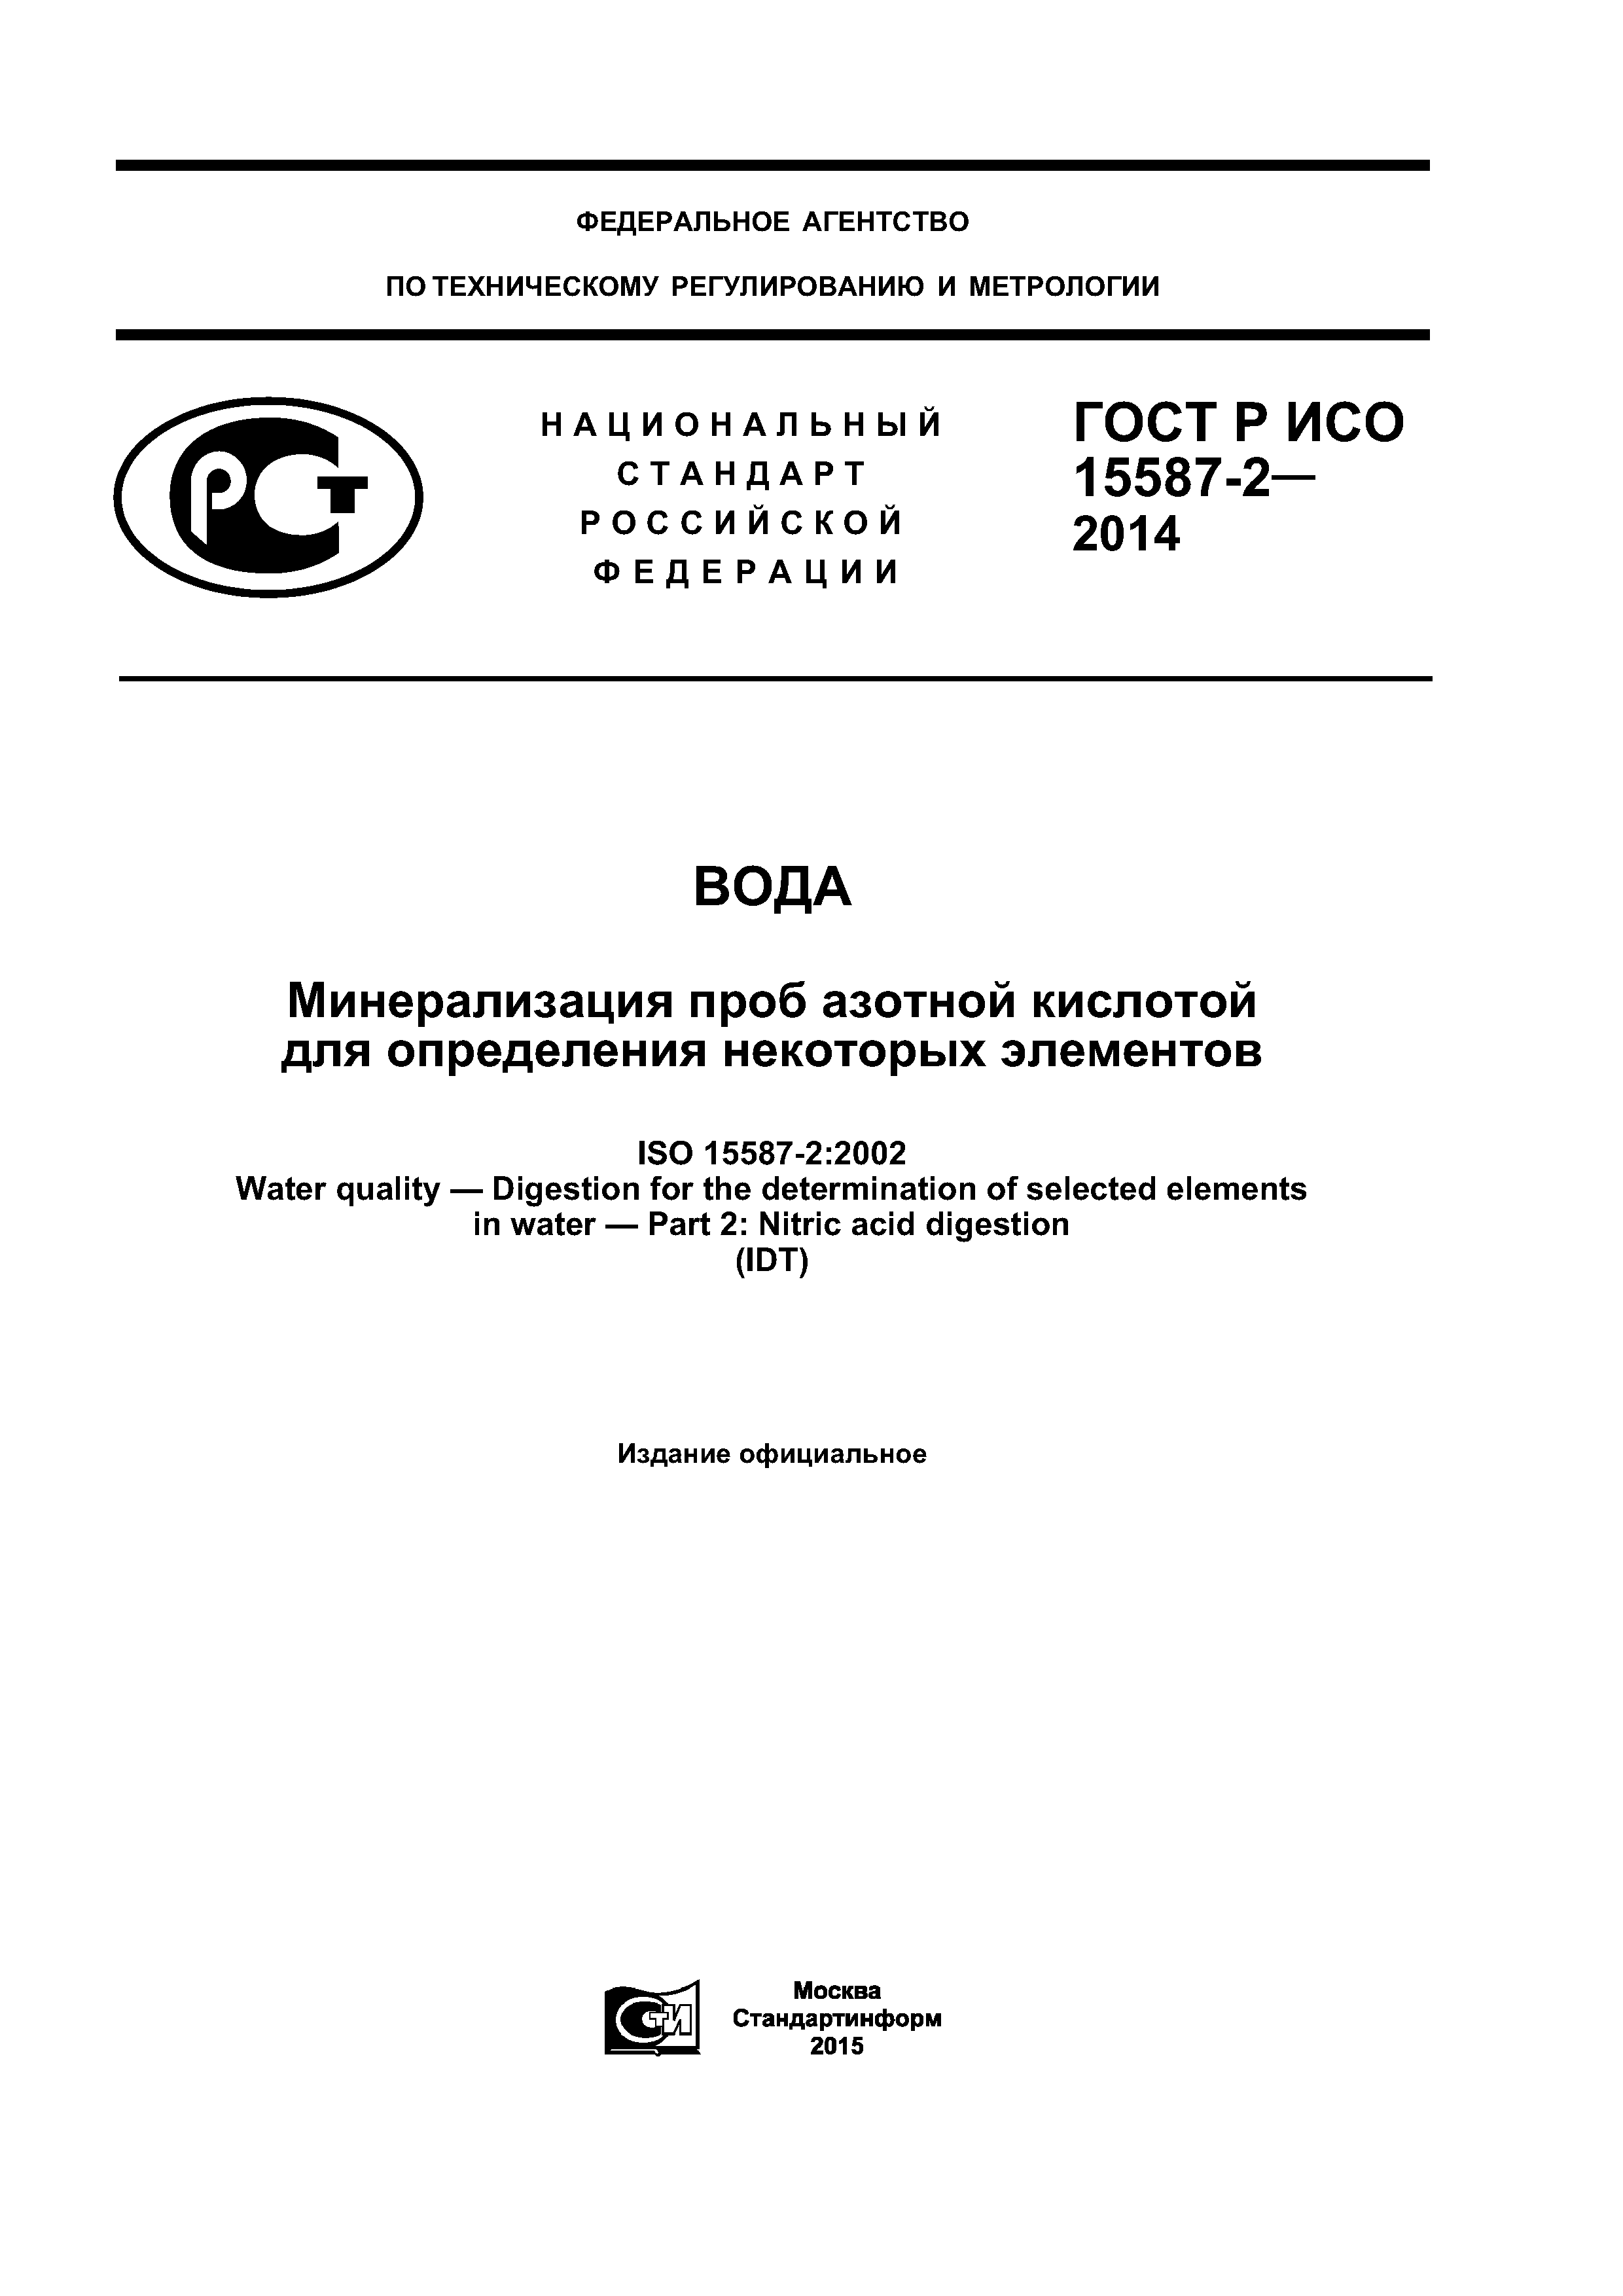 ГОСТ Р ИСО 15587-2-2014